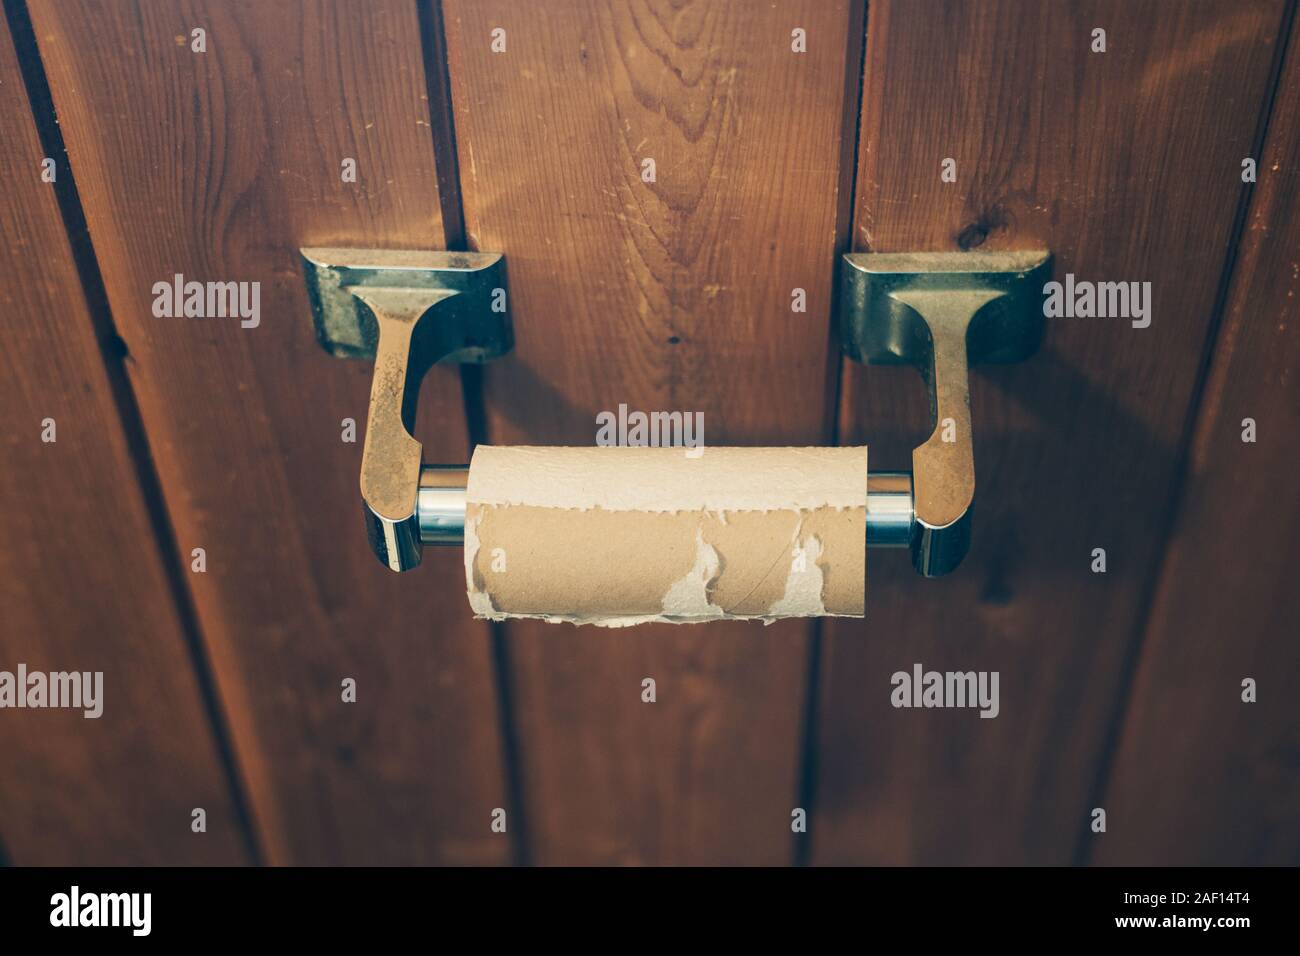 Svuotare la carta igienica rotolo da sopra Foto Stock